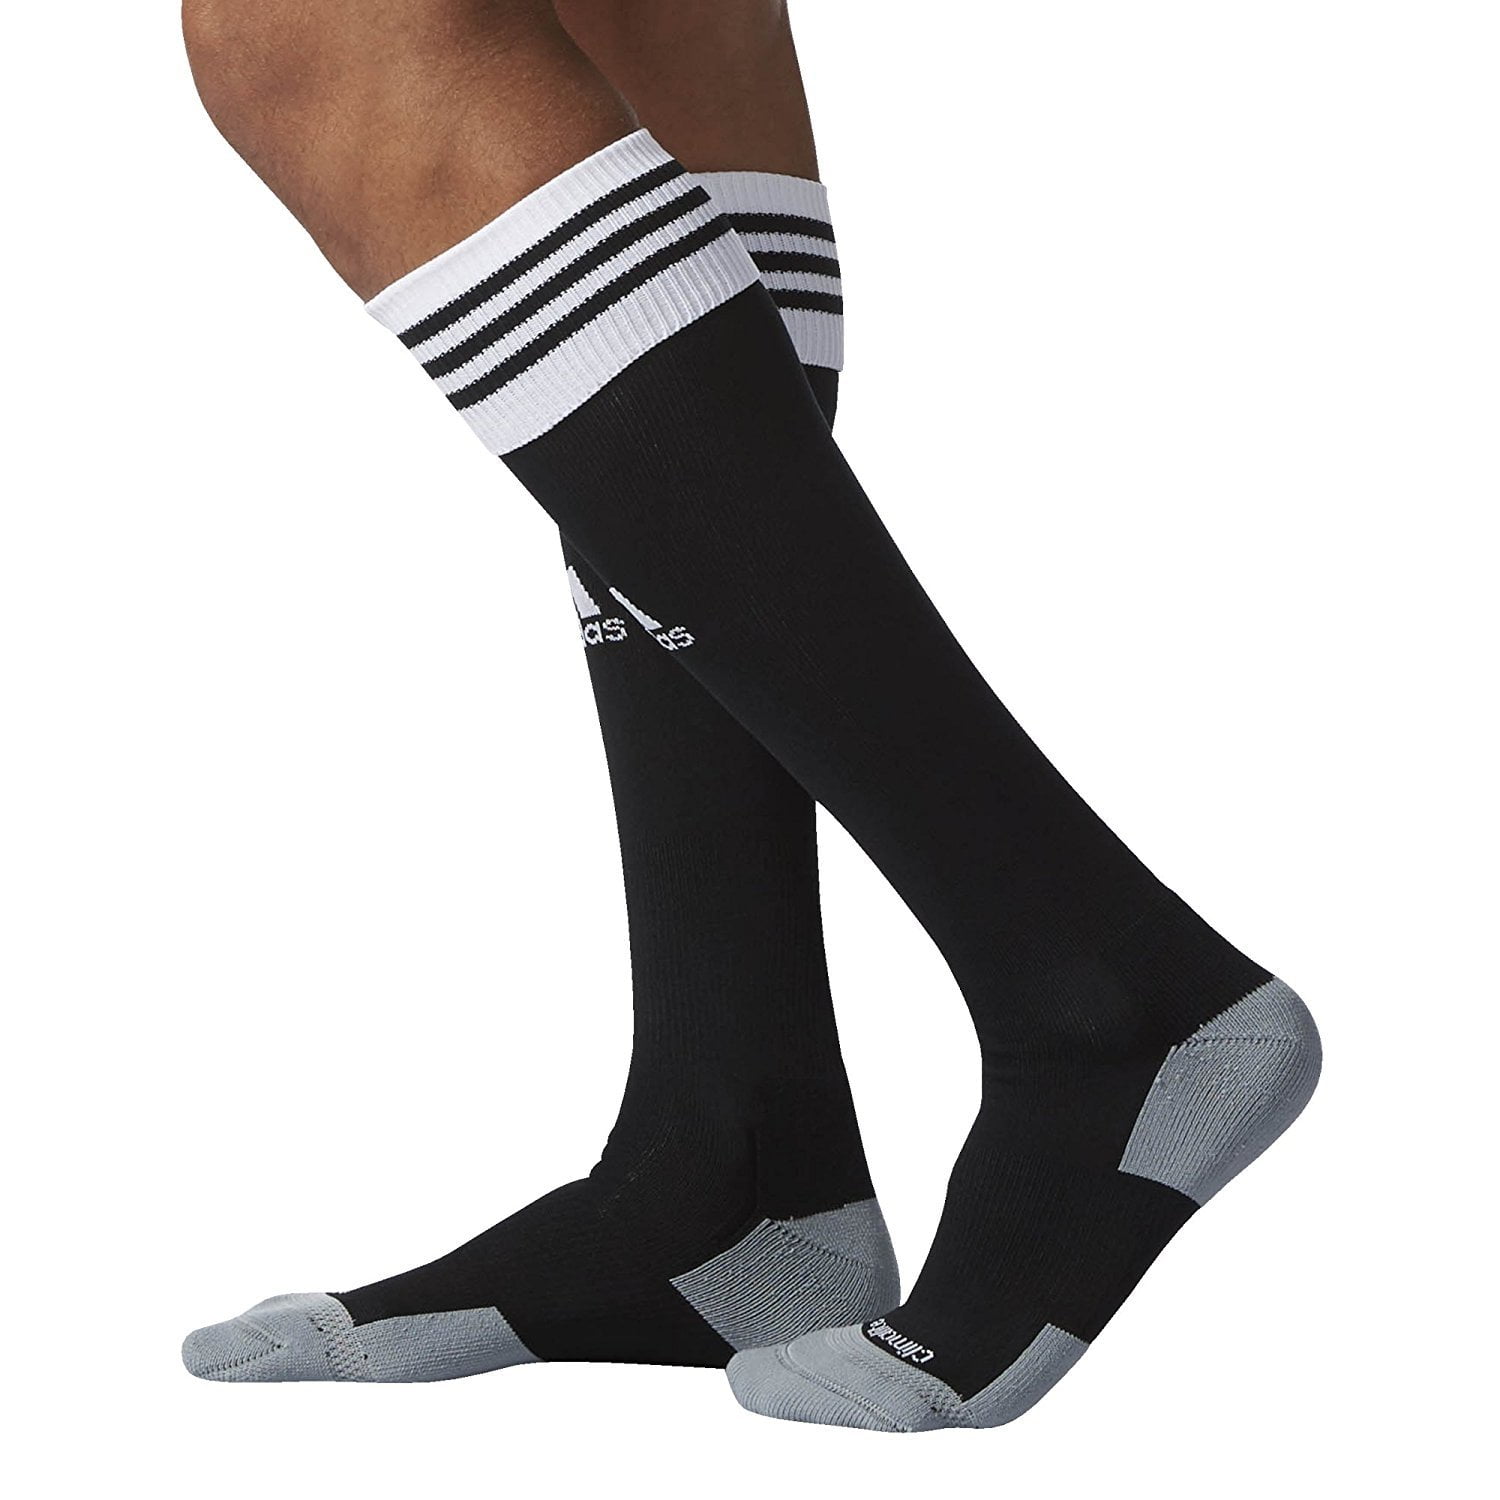 Adidas Copa Zone Iii Sock Size Chart